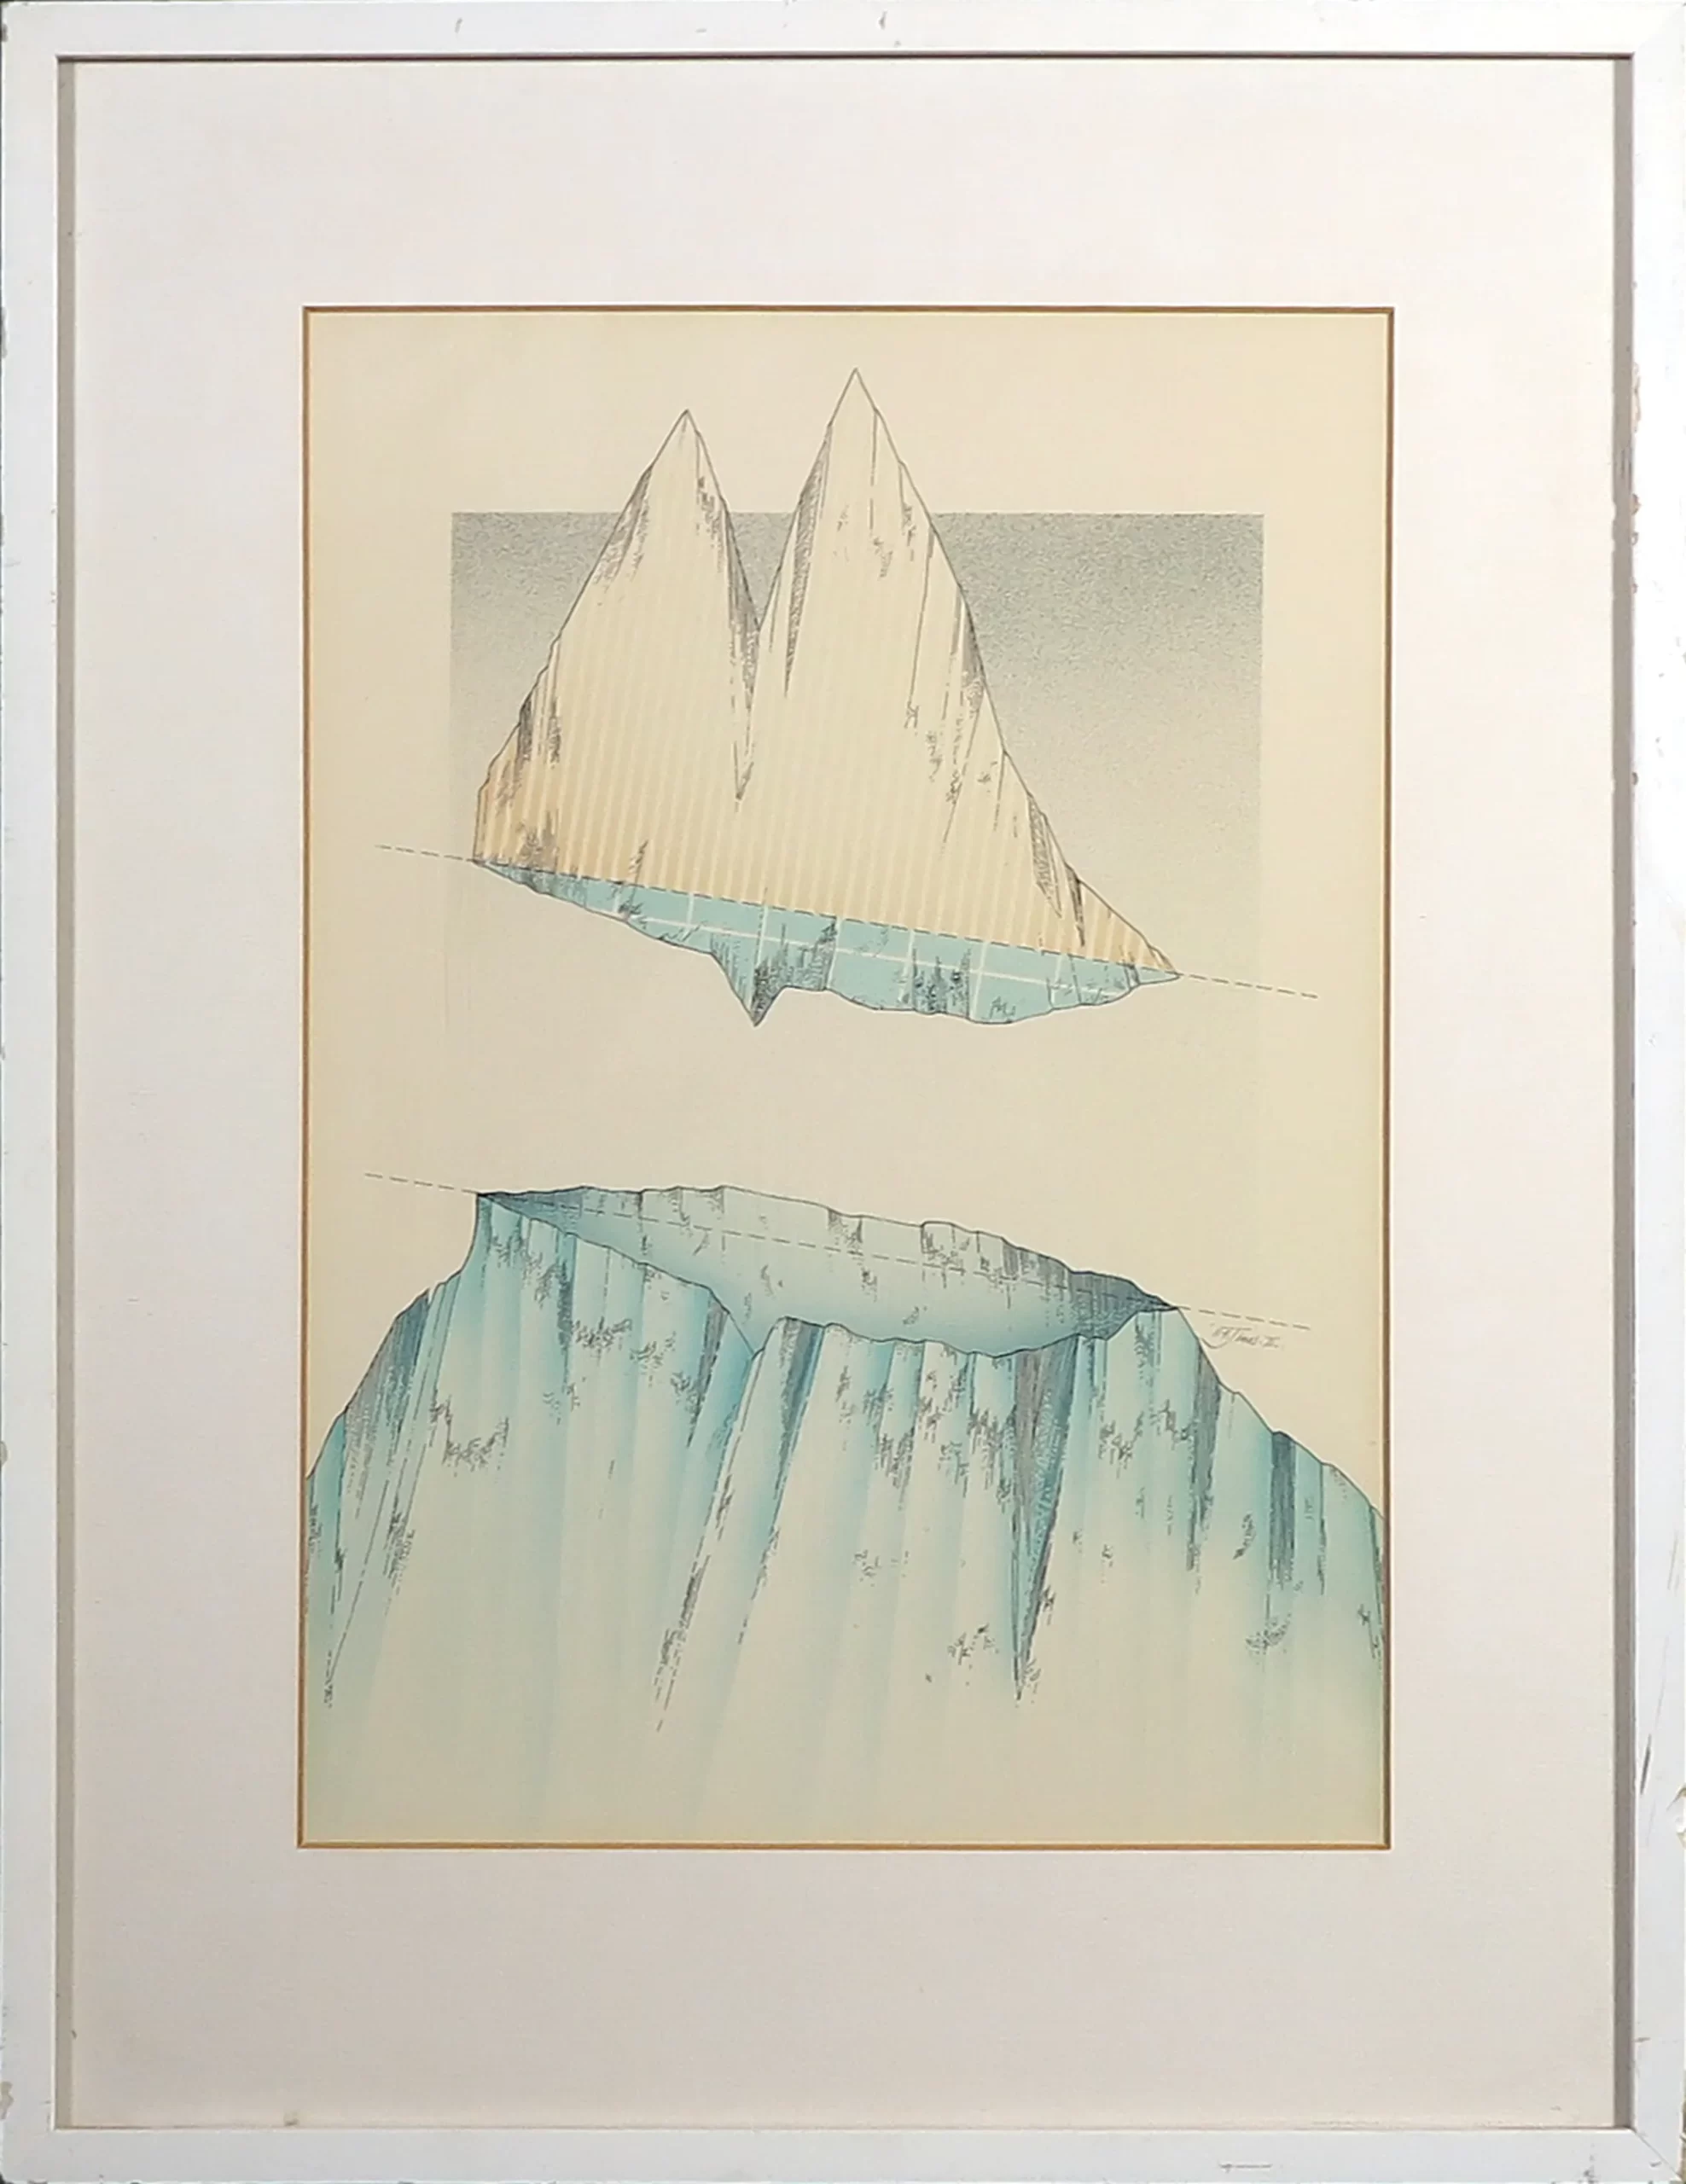 Featured image for “Het topje van de ijsberg II”